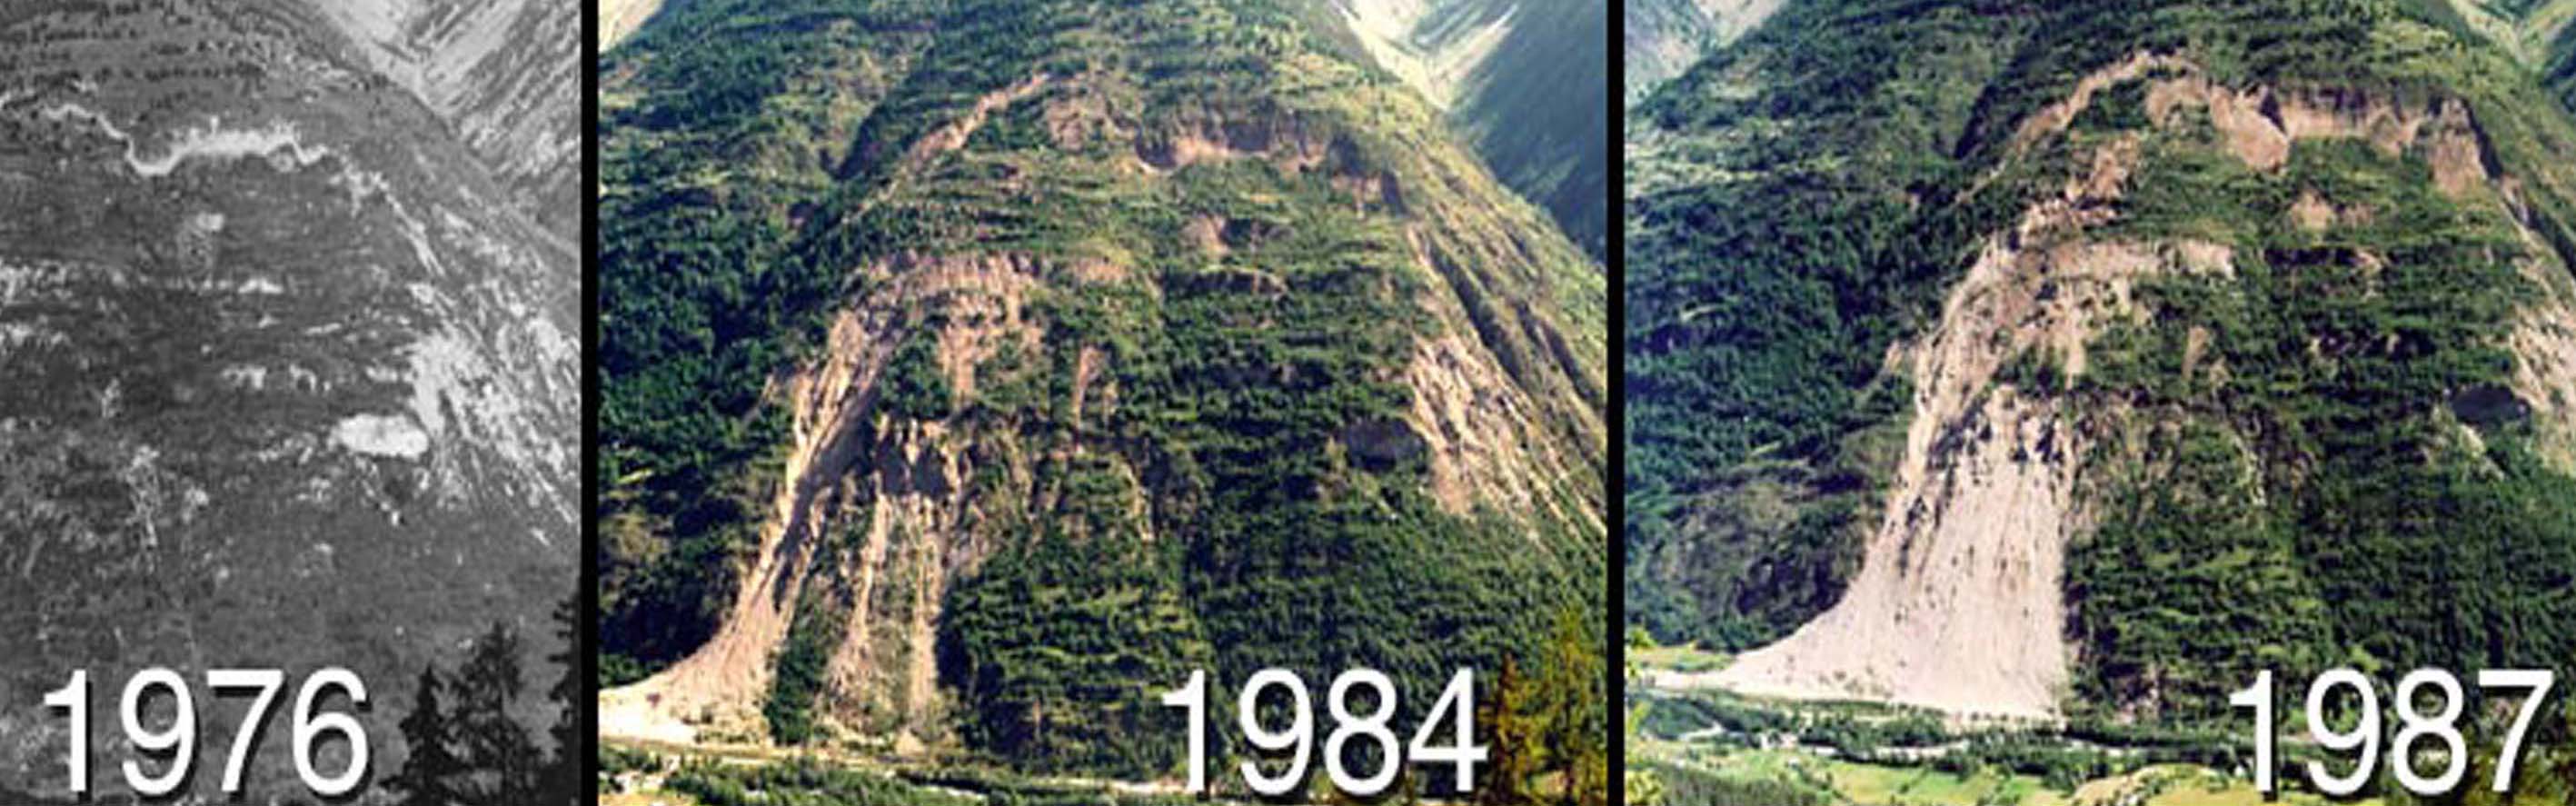 La Clapîère landslide: geomorphological evolution of the  unstable slope